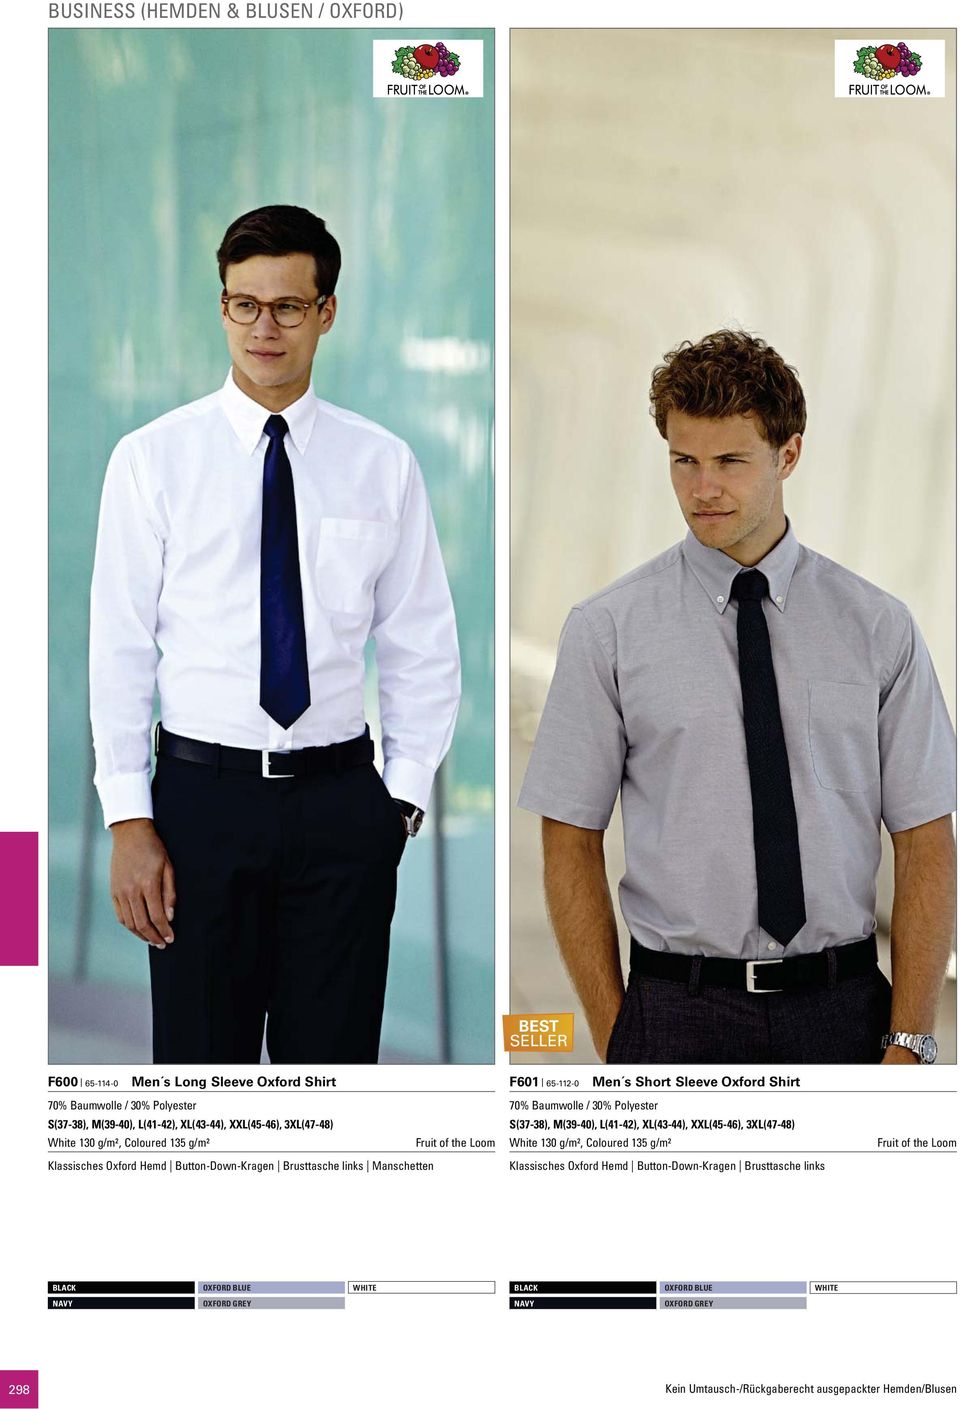 Manschetten F601 65-112-0 Men s Short Sleeve Oxford Shirt 70% Baumwolle / 30% Polyester S(37-38), M(39-40), L(41-42), XL(43-44), XXL(45-46), 3XL(47-48)